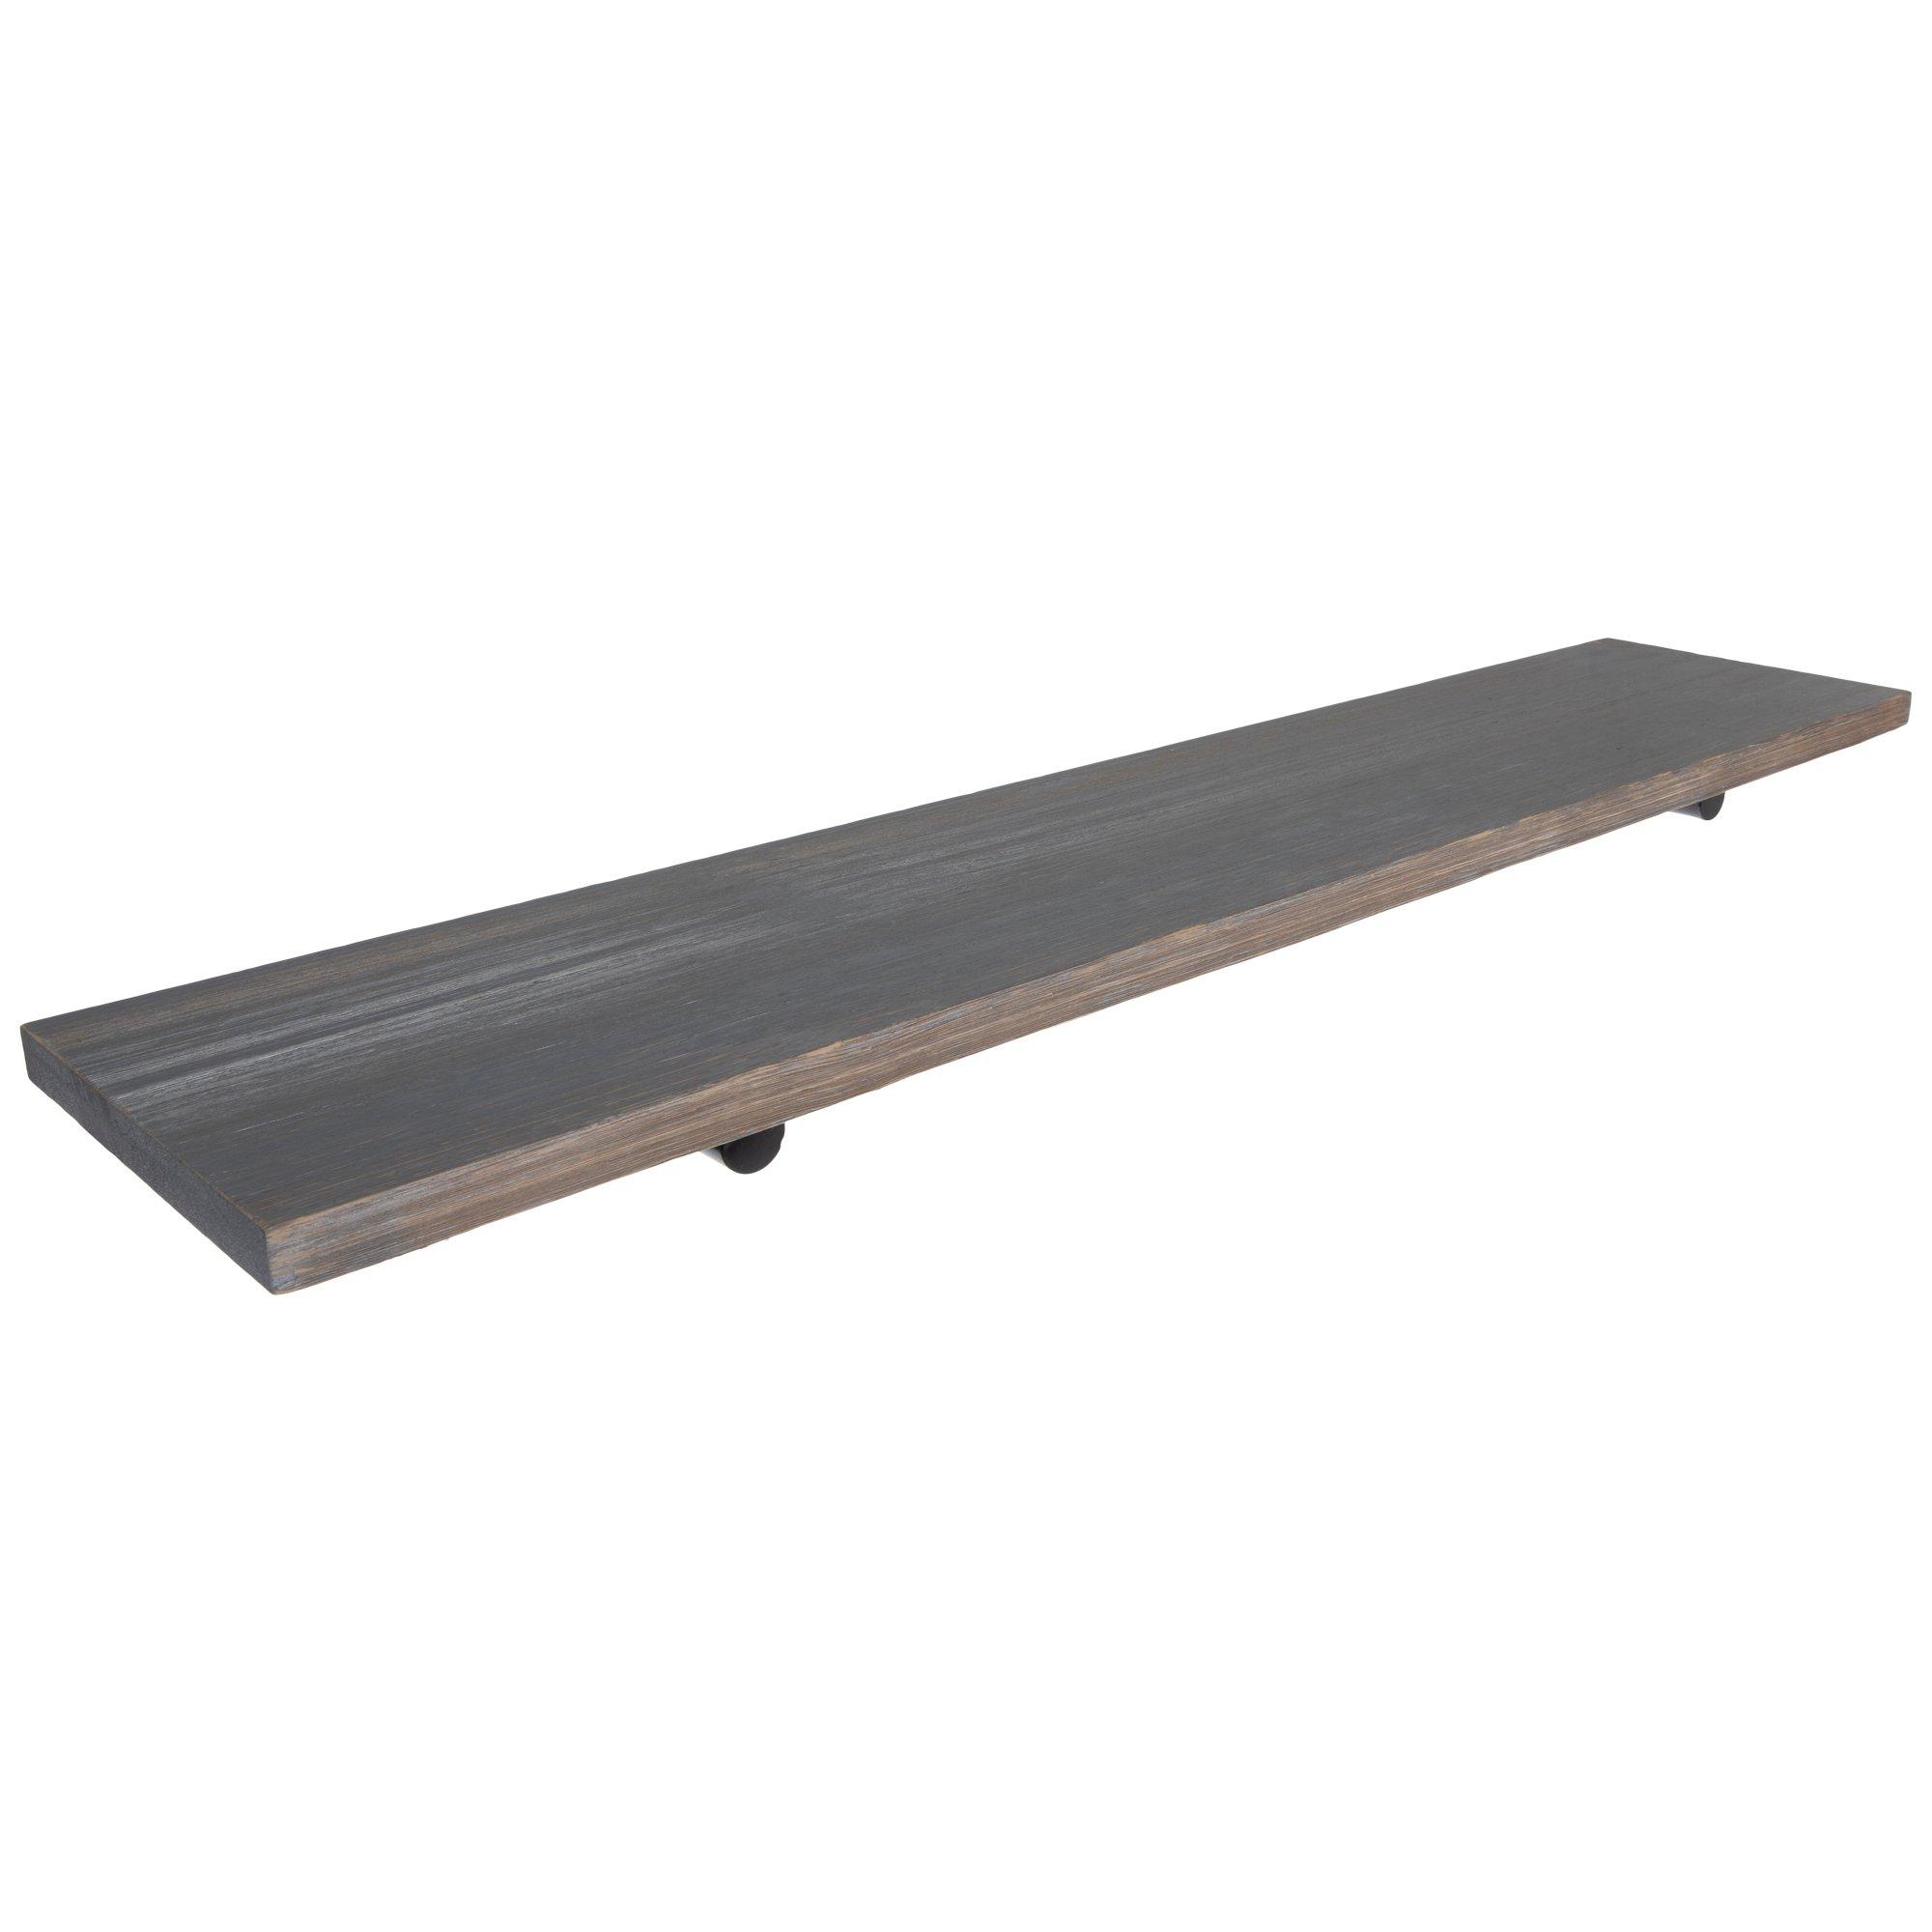 Tall Wood Wall Shelf Brushed Nickel Metal - Brightroom™ : Target